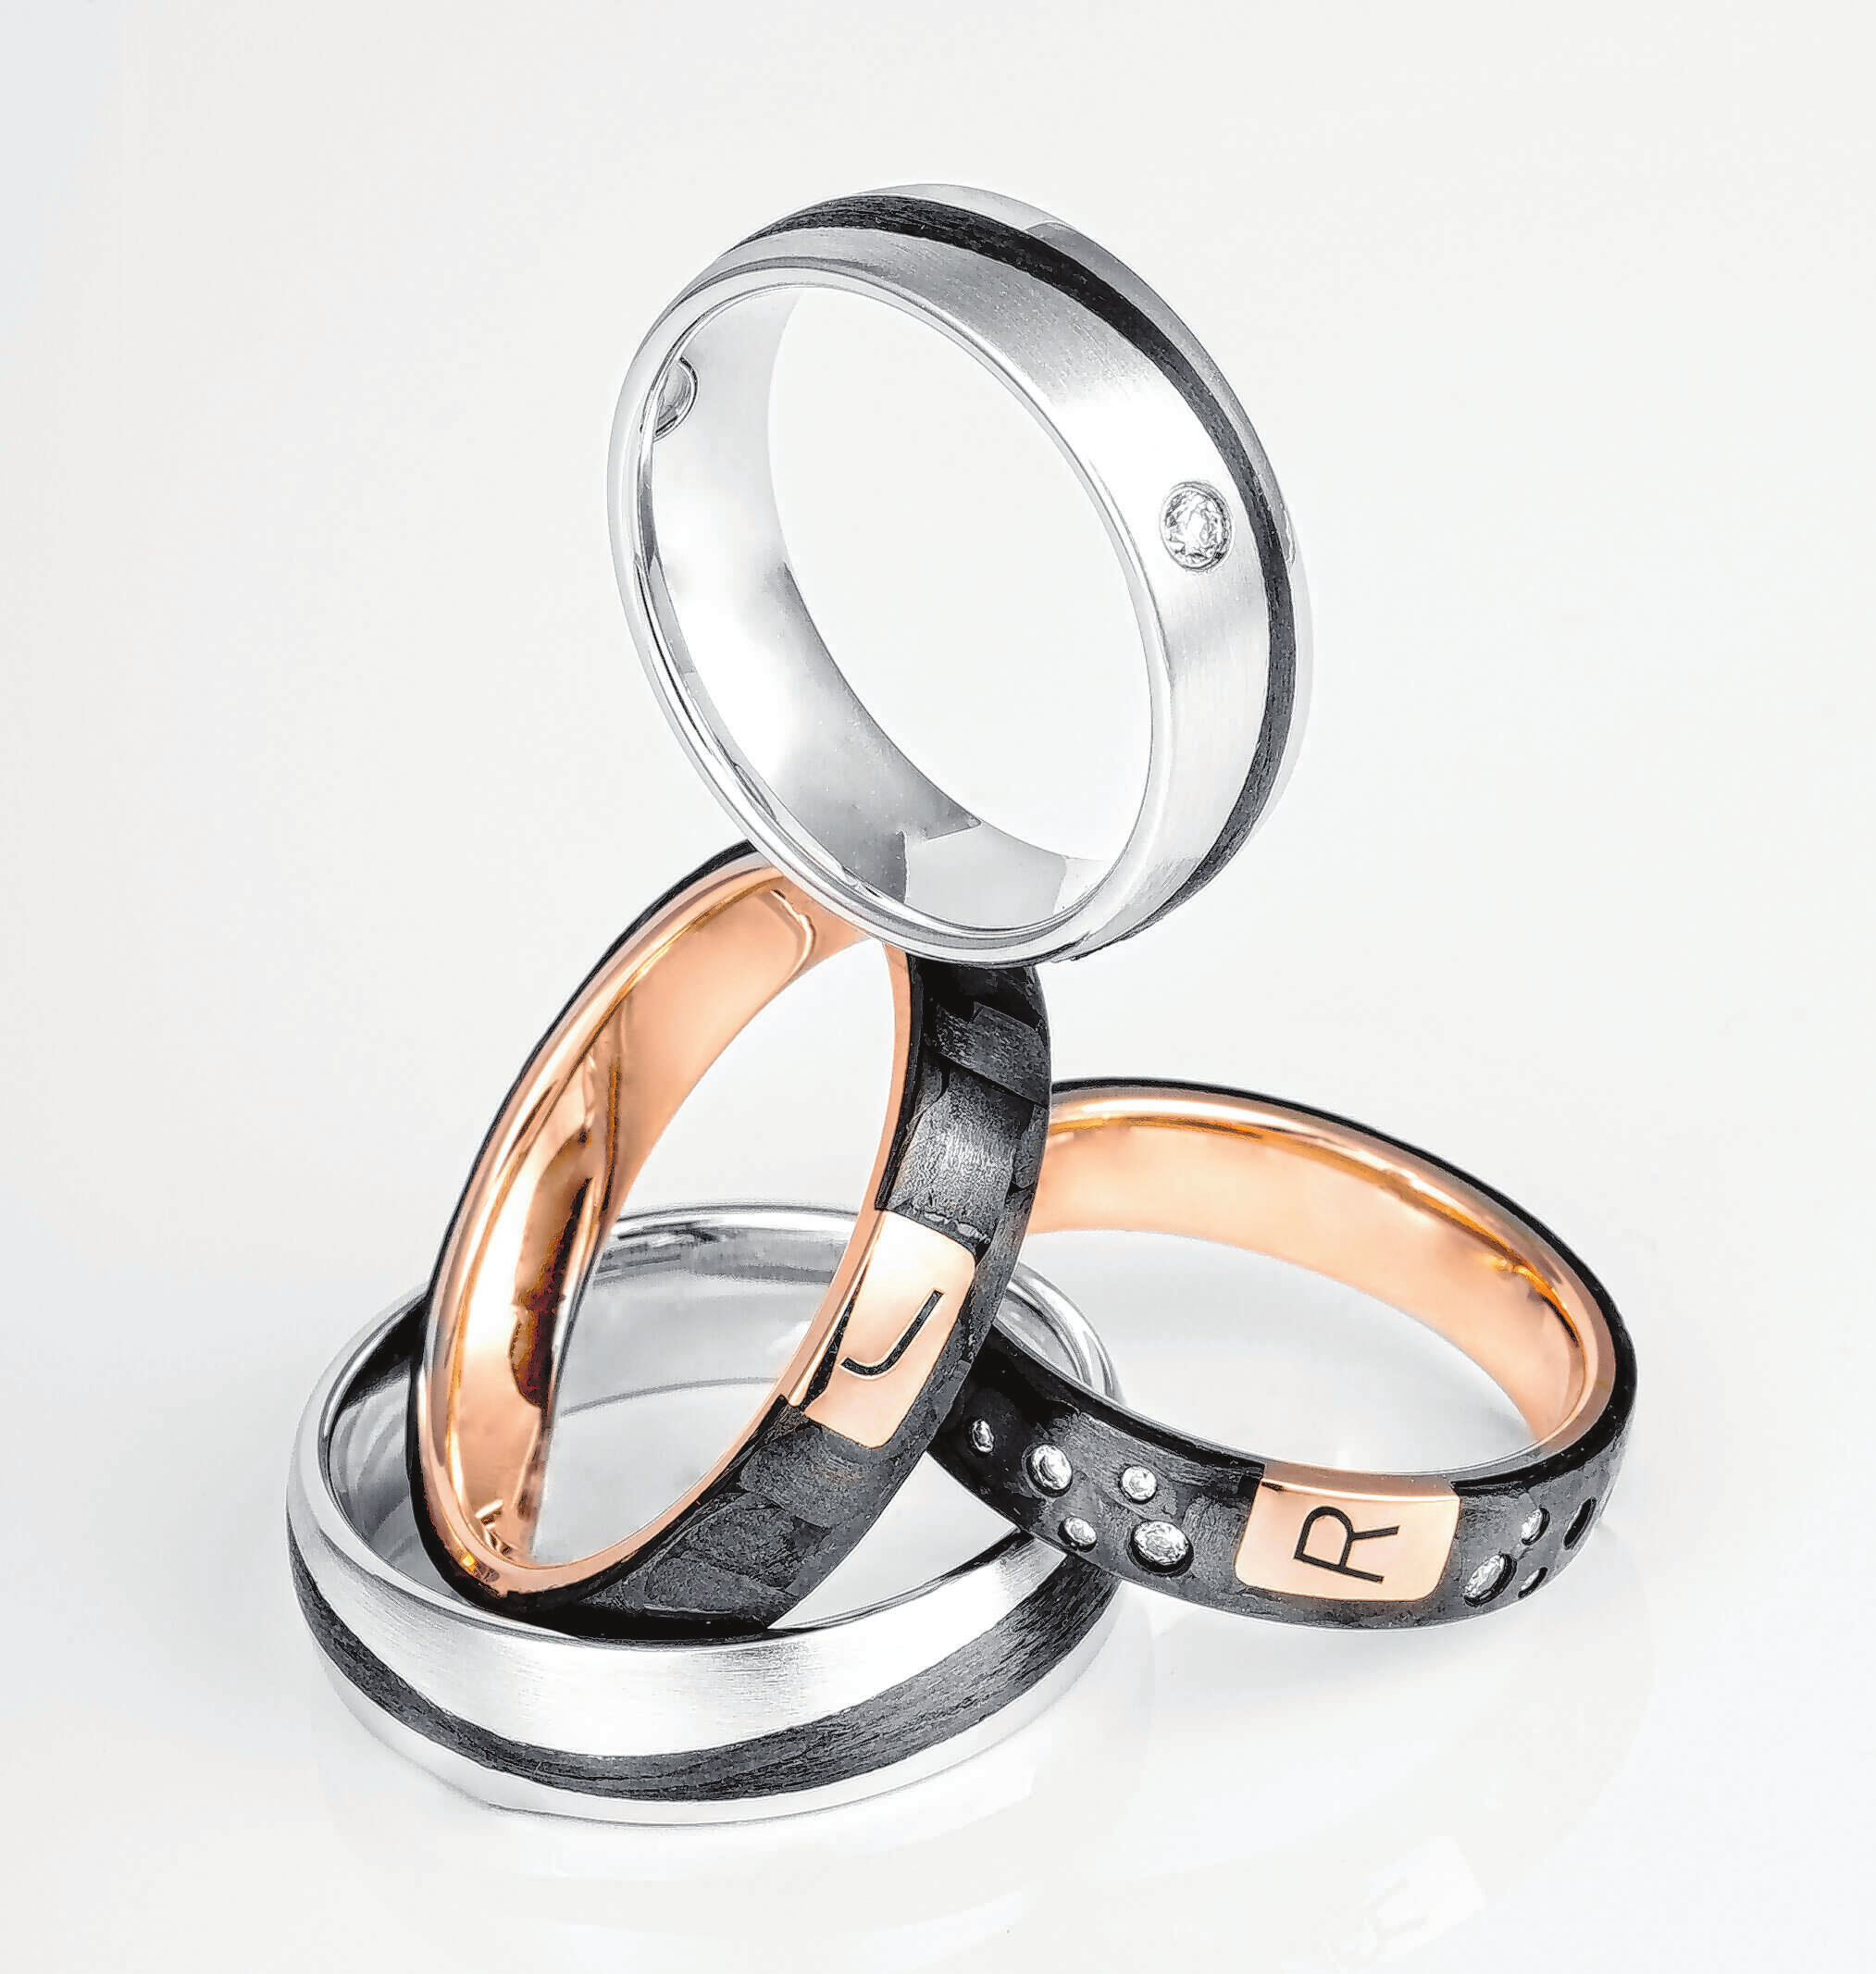 Beliebt sind auch Ring-Designs mit schwarzen Linien und Mustern.